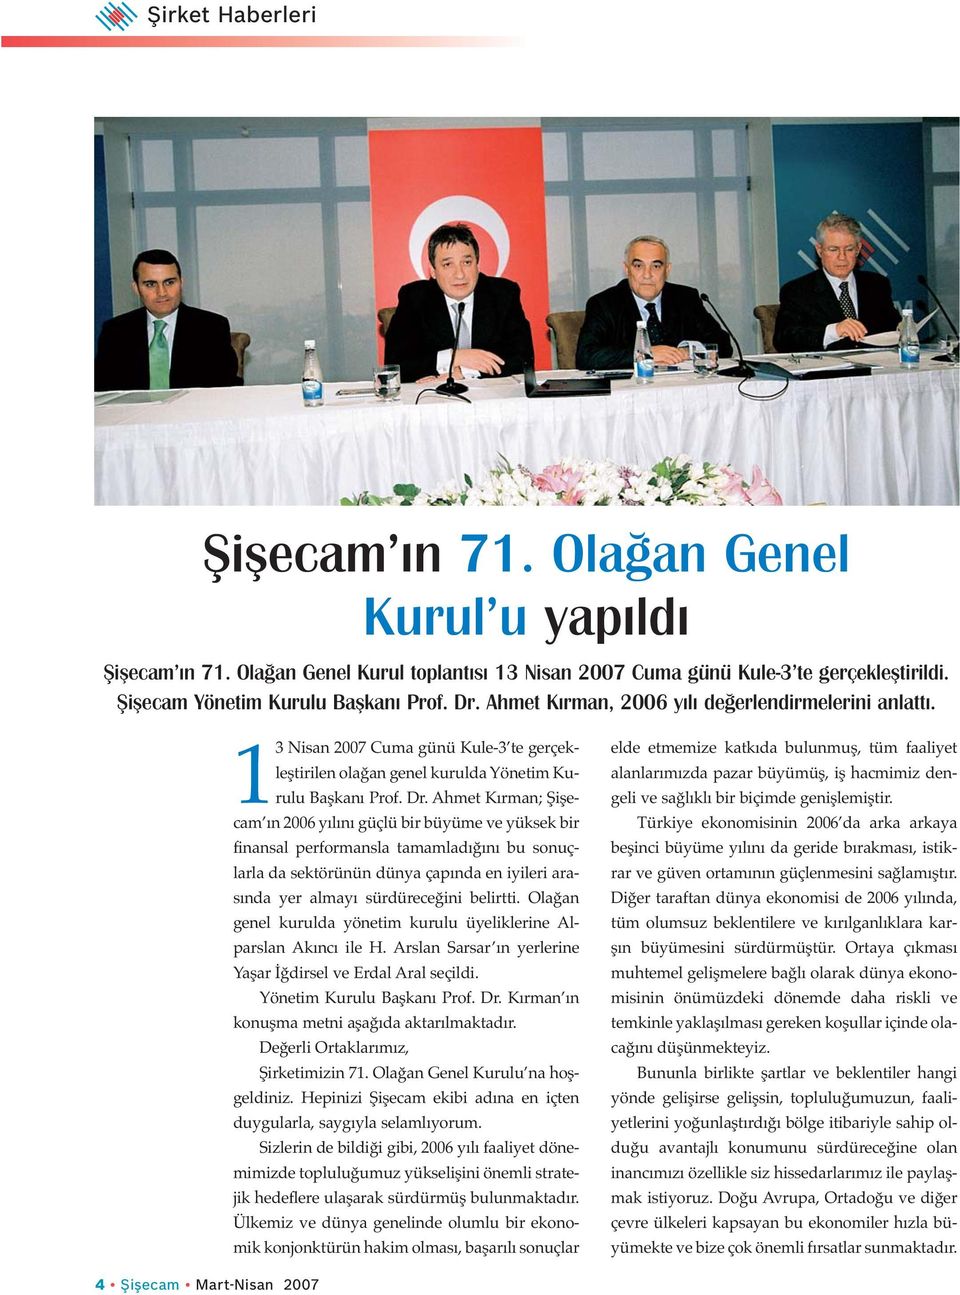 Ahmet Kırman; Şişecam ın 2006 yılını güçlü bir büyüme ve yüksek bir finansal performansla tamamladığını bu sonuçlarla da sektörünün dünya çapında en iyileri arasında yer almayı sürdüreceğini belirtti.